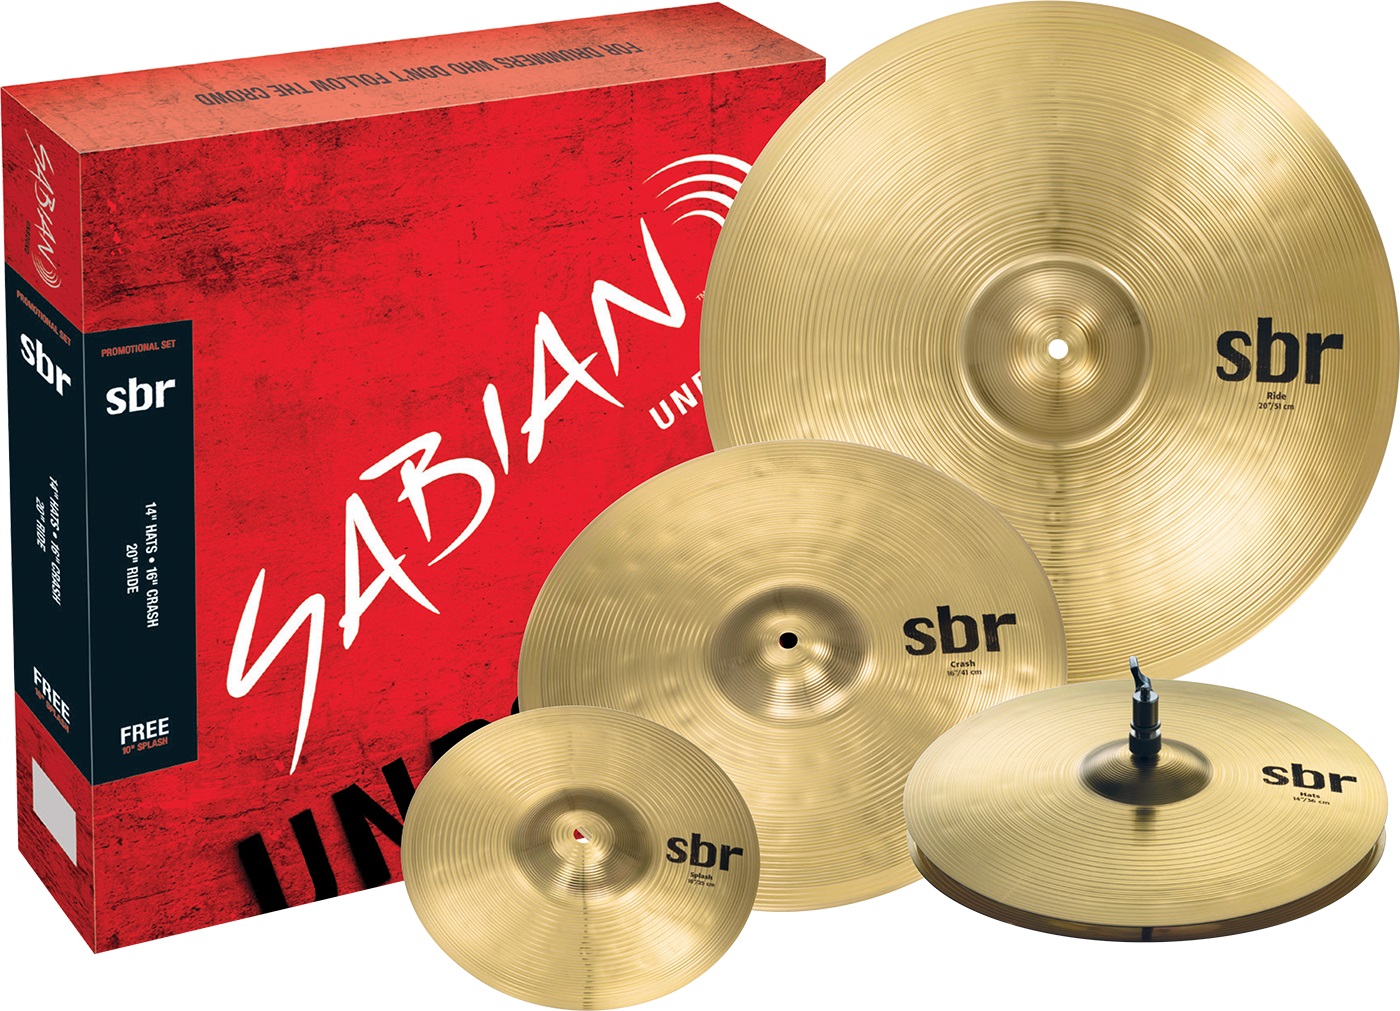 Тарелки, барабаны для ударных установок Sabian SBr Promotional Pack тарелки барабаны для ударных установок sabian 16 b8x thin crash